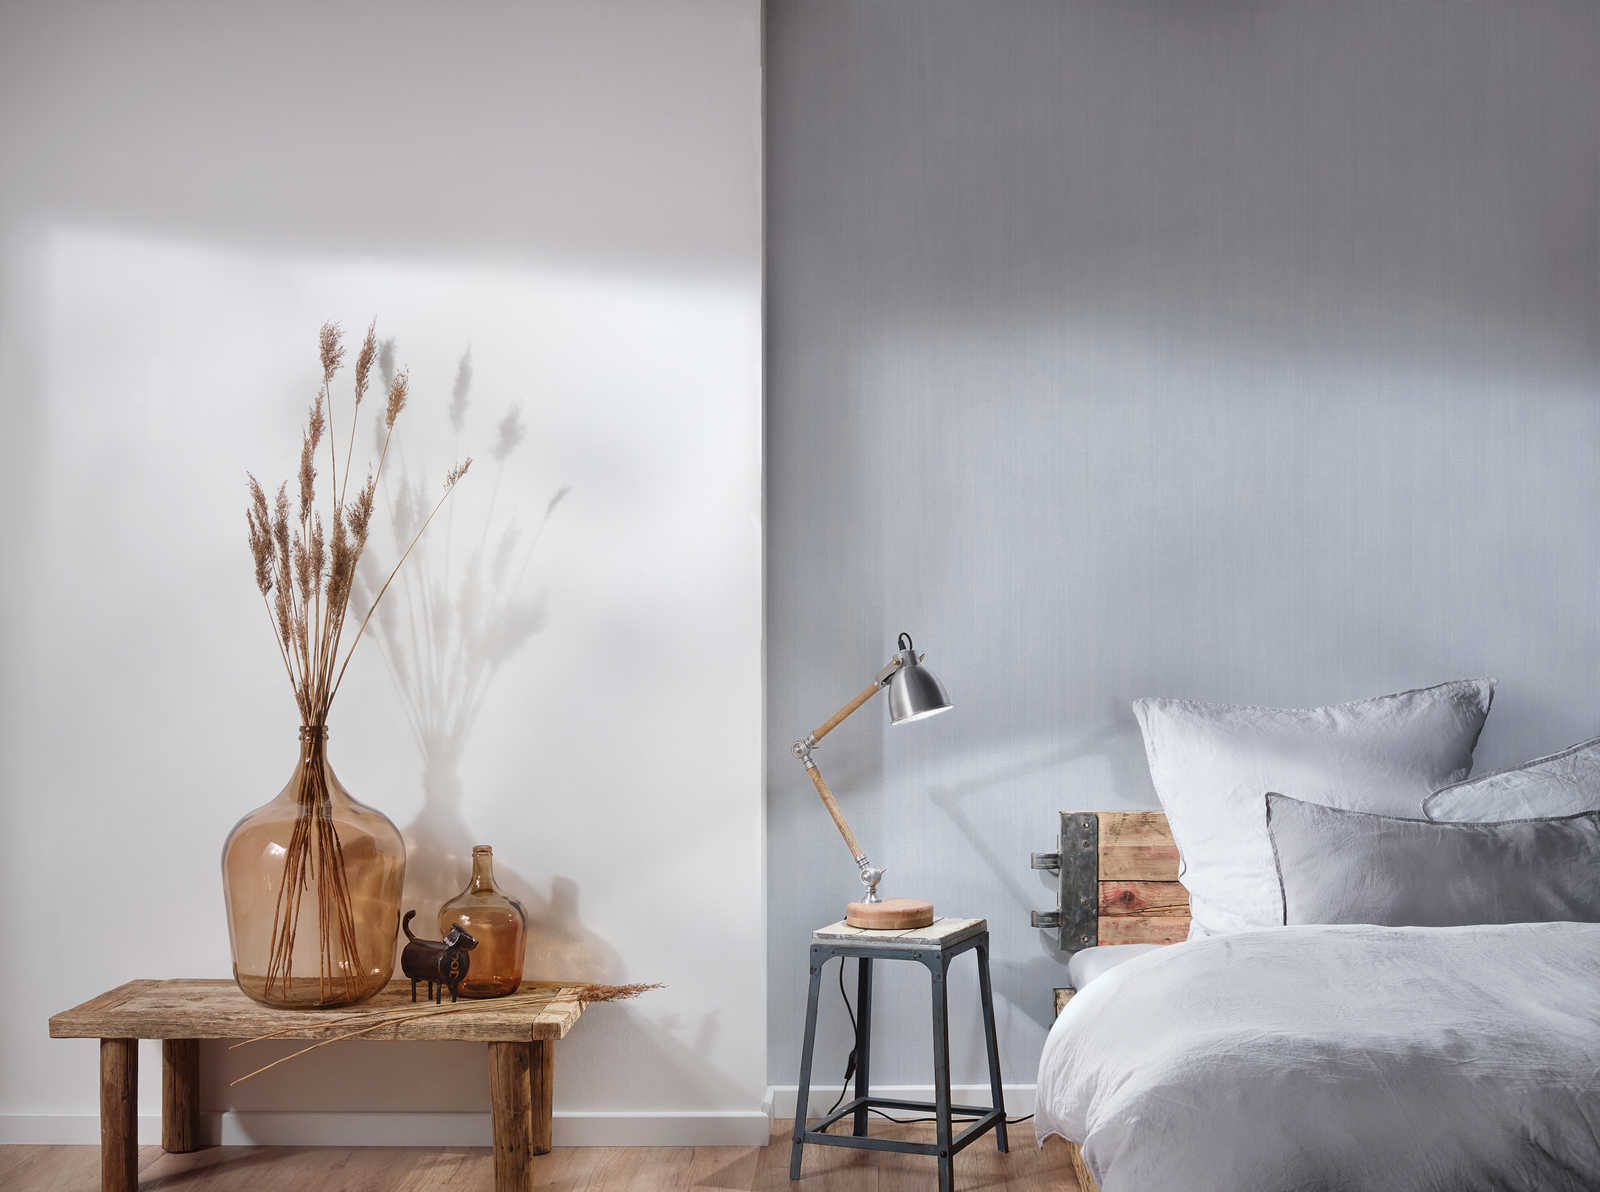             Hatch plain wallpaper with subtle texture - grey
        